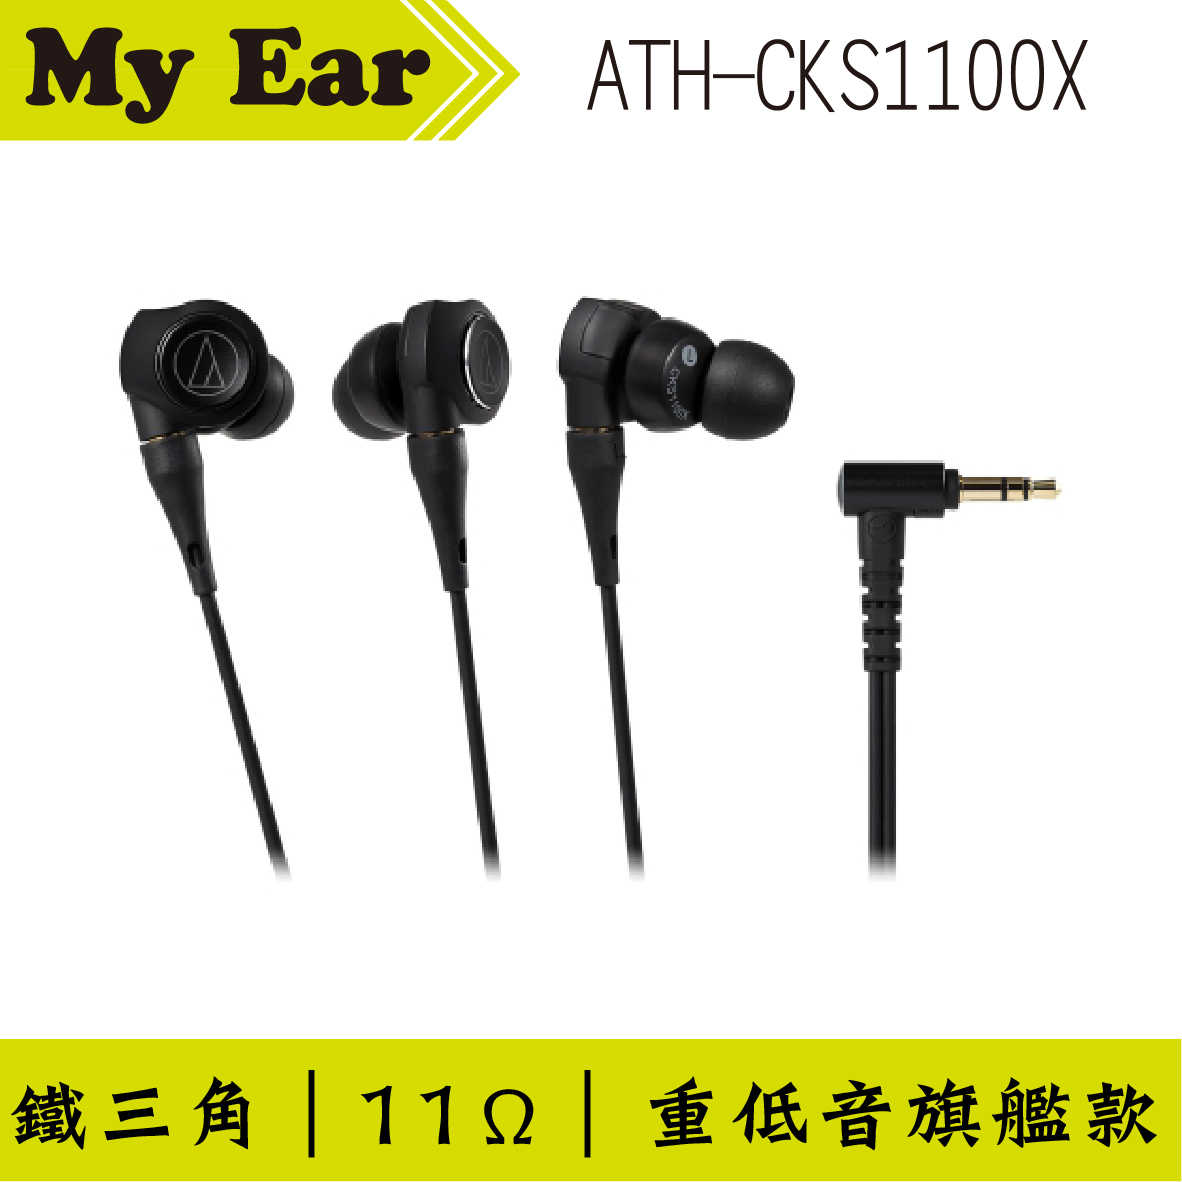 鐵三角 ATH-CKS1100X 重低音 CKS1100X 耳道式耳機｜My Ear 耳機專門店